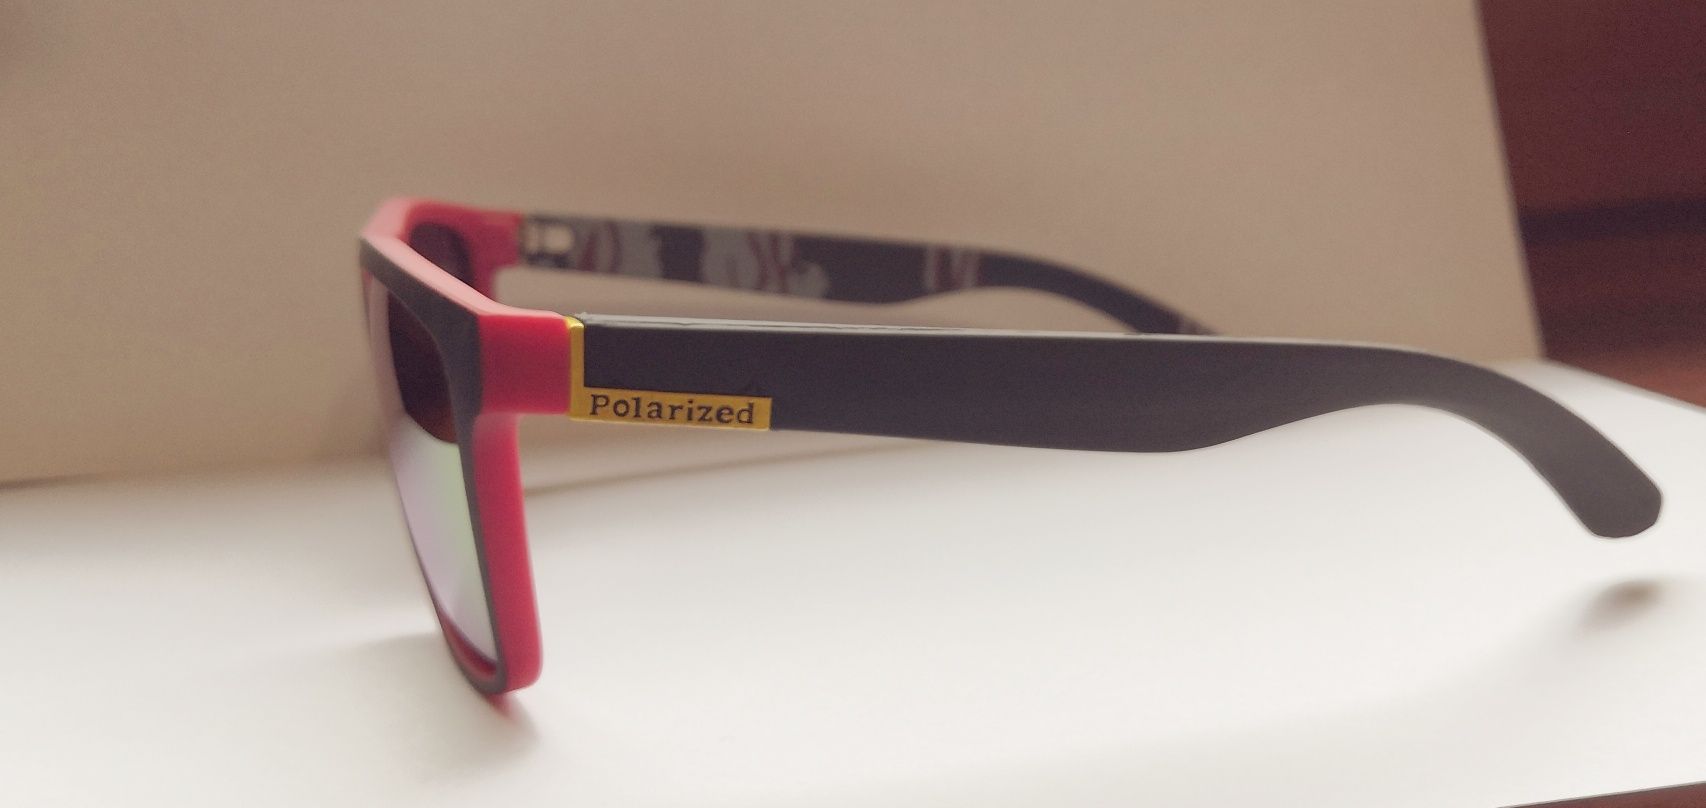 Okulary przeciwsłoneczne antypolaryzacyjne - polarized